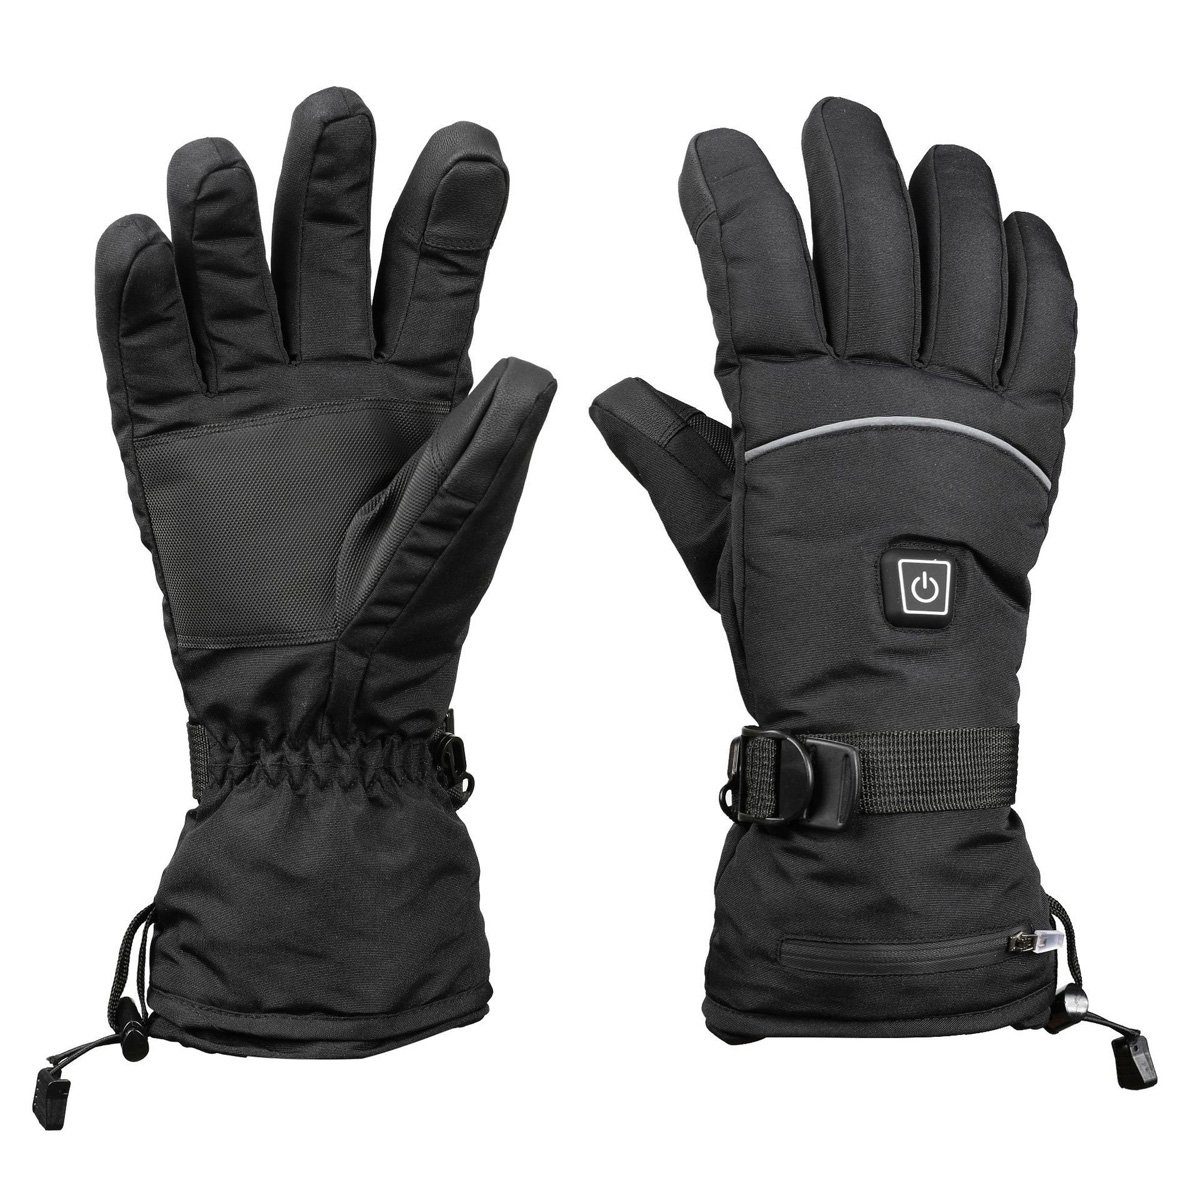 DOPWii Fahrradhandschuhe Beheizte stufige Temperaturregelung Handschuhe,Wasserdicht,Winddicht,3